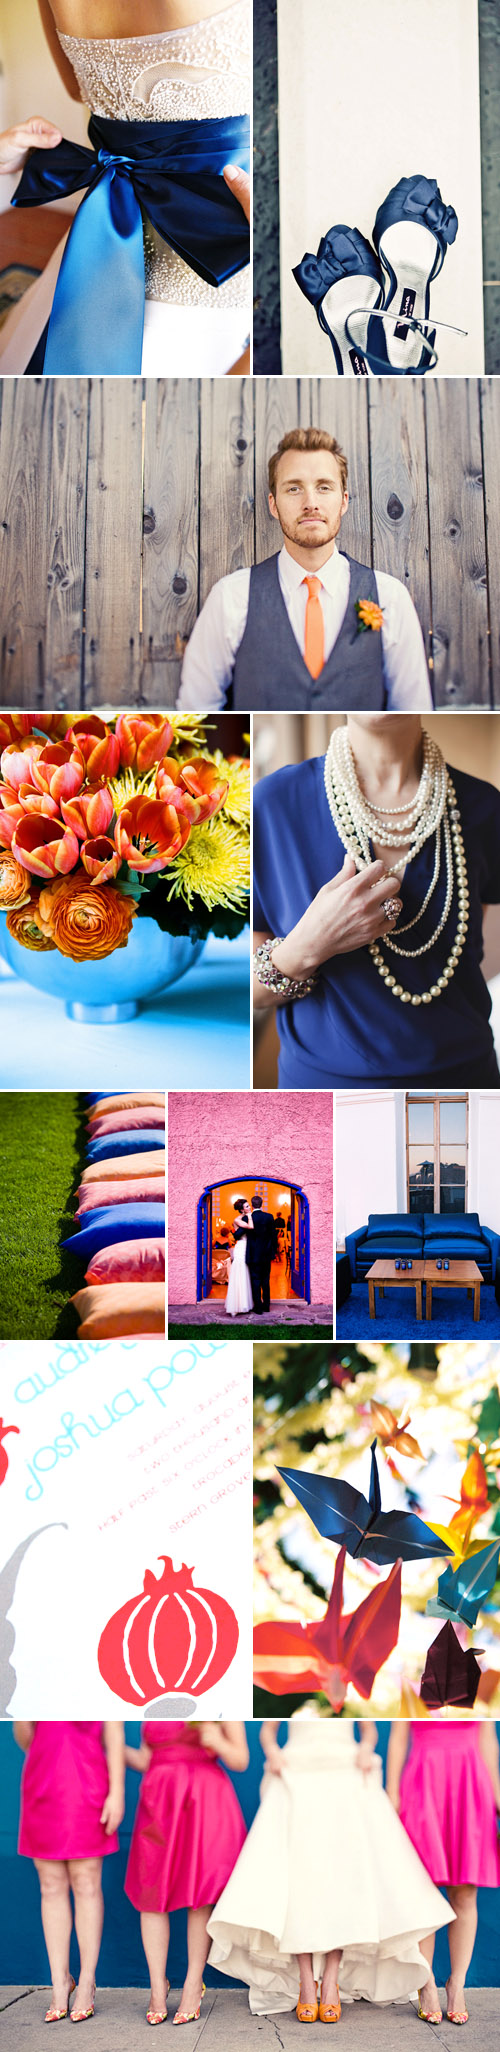 vibrant blue, orange and pink wedding color palette inspiration board